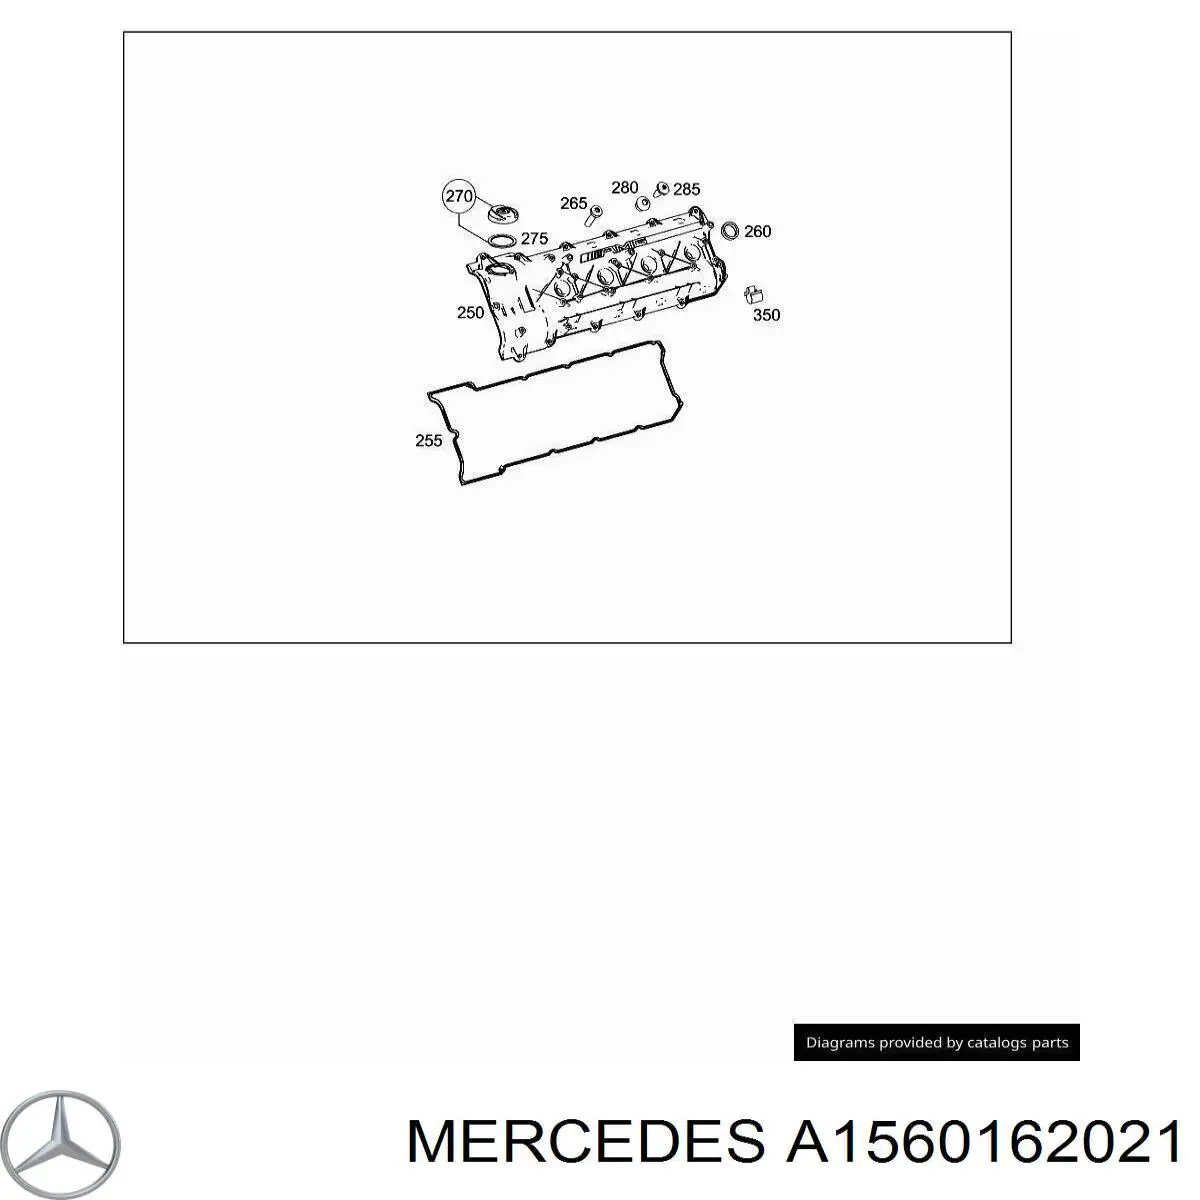 1560162021 Mercedes прокладка клапанной крышки двигателя левая